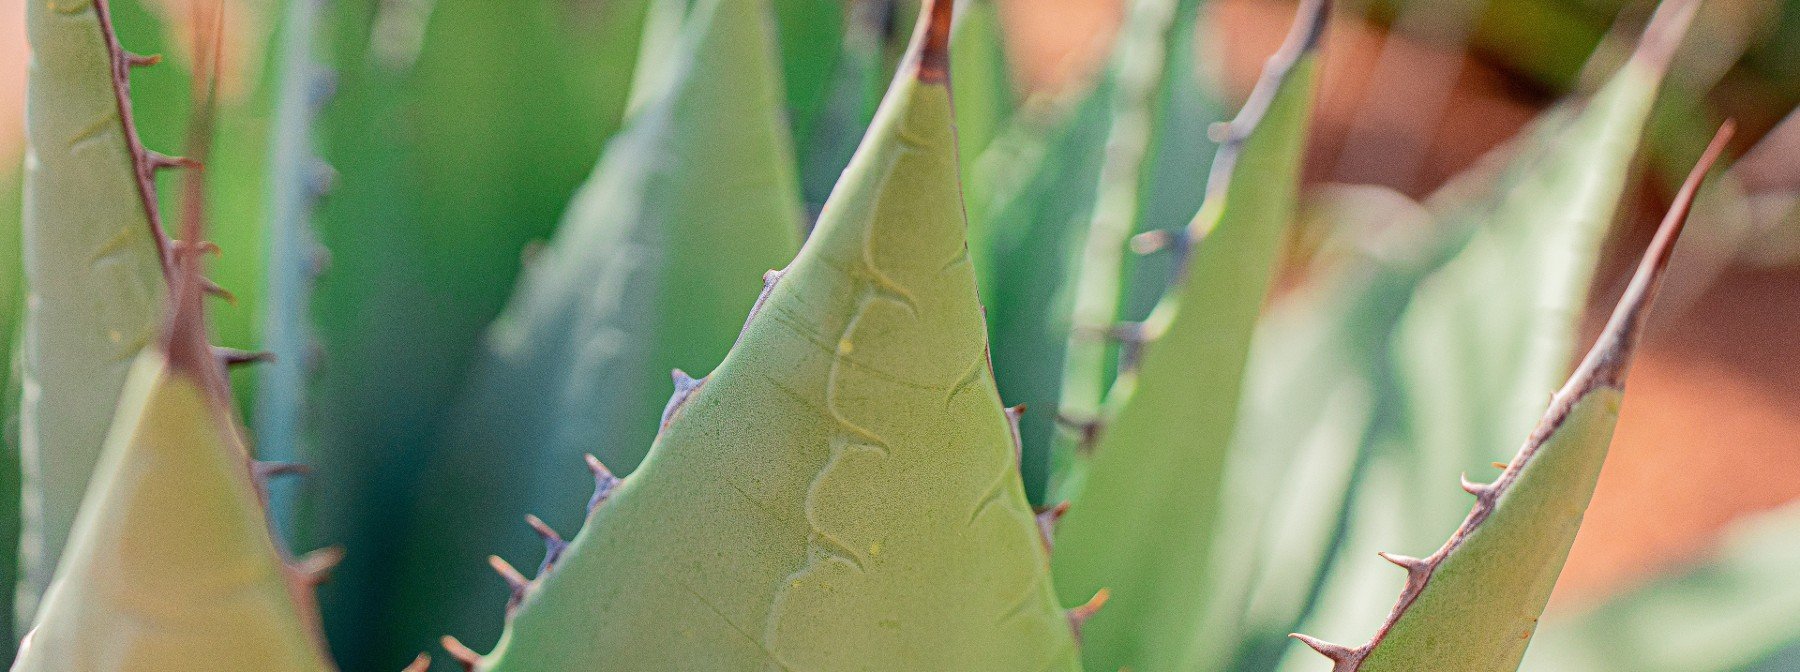 Aloes Oraz Tańsze Zamienniki – Korzyści